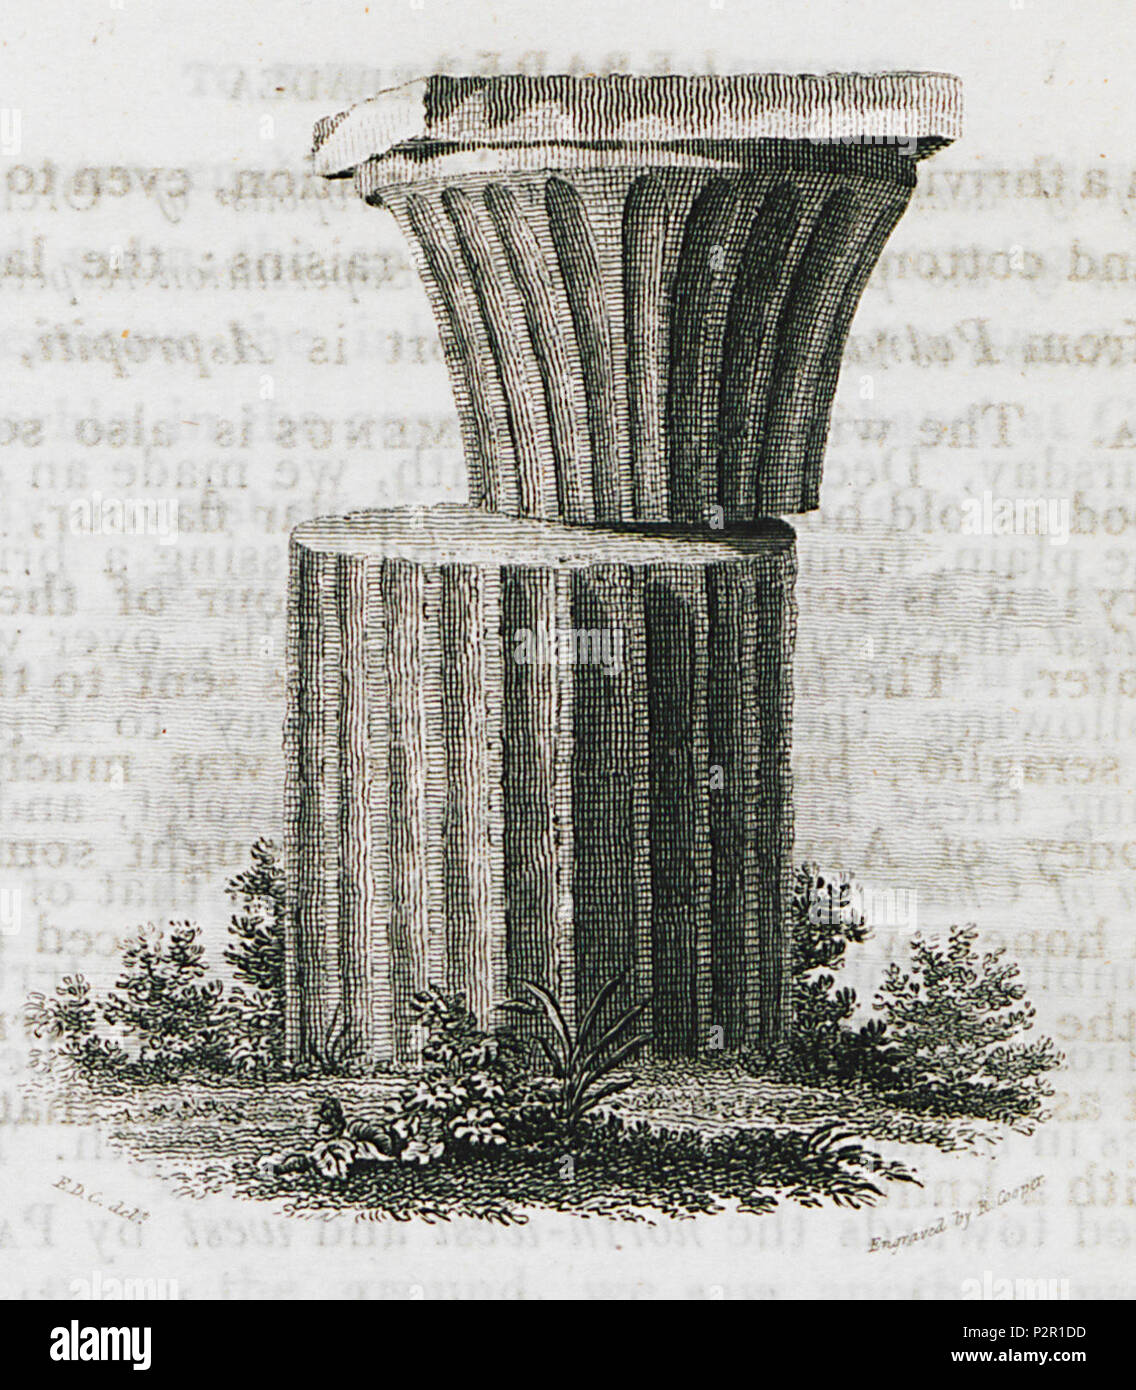 (Singular prüfstücks der griechischen Architektur) - Clarke Edward Daniel - 1816. Stockfoto